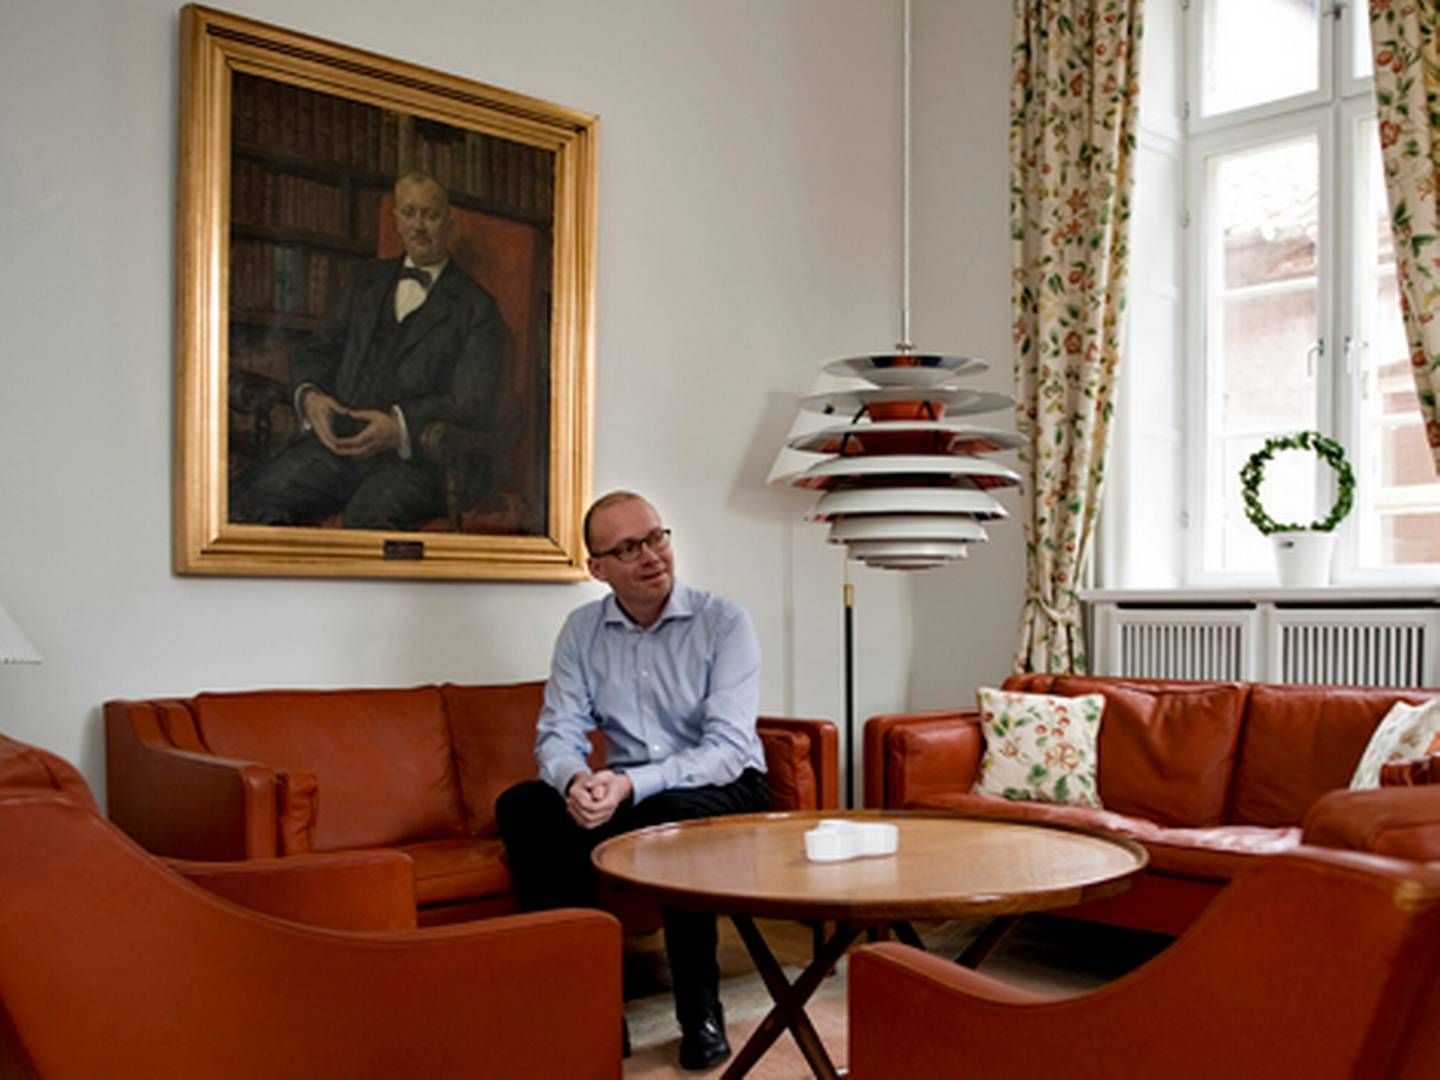 Koldings borgmester, Jørn Pedersen (V), giver ikke op i kampen om et nyt friplejehjem. | Foto: Ritzau scanpix/Ole Frederiksen.